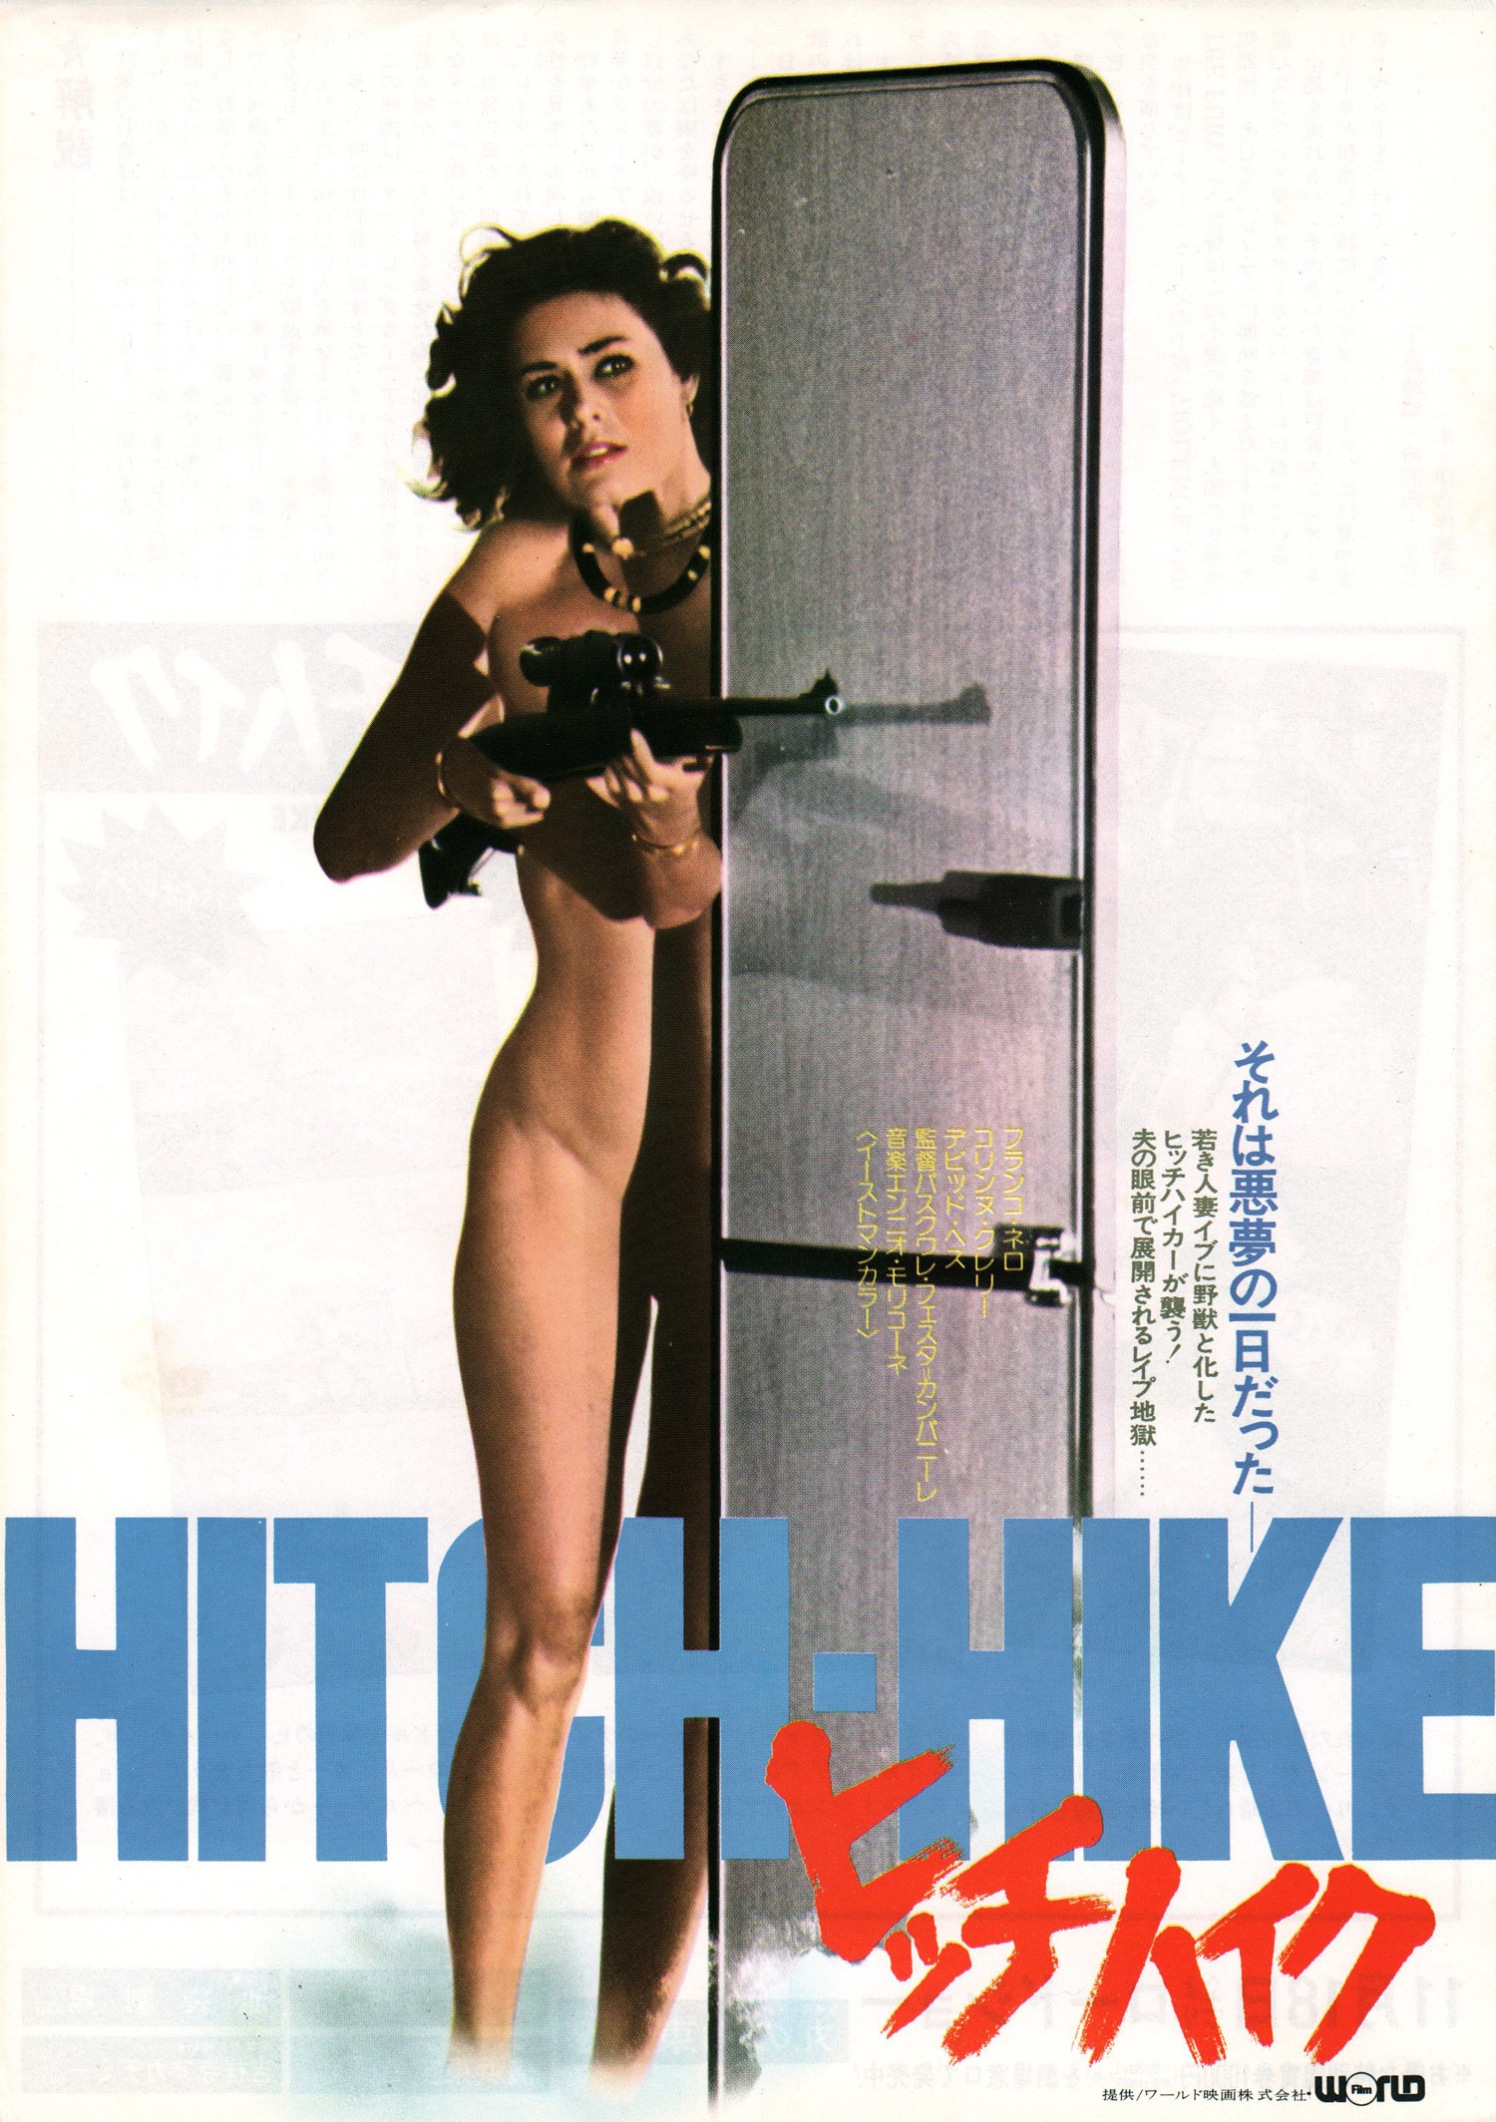 hitchhike-japan-1